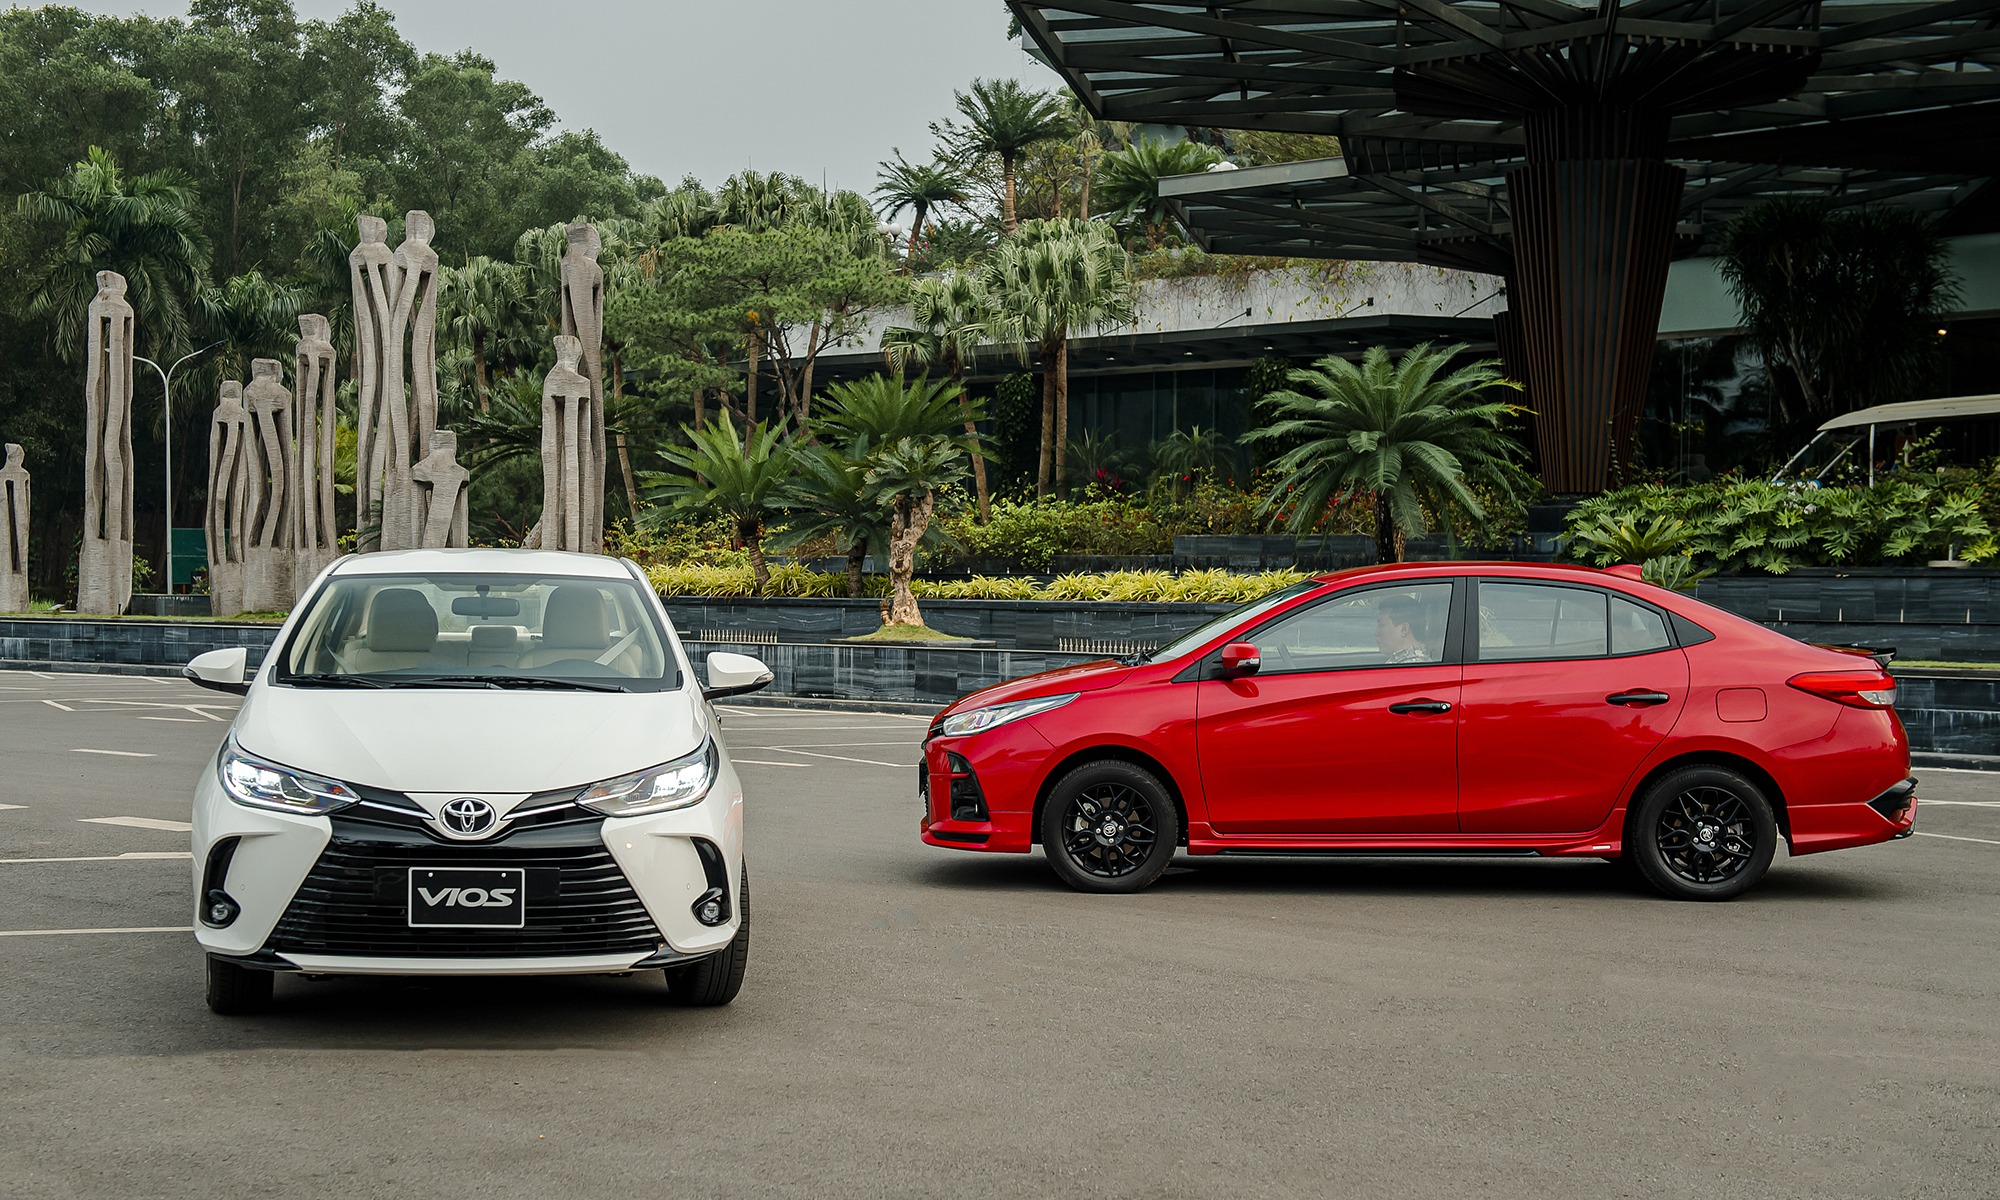 Toyota chính thức trình làng Toyota Vios phiên bản 2021 nâng cấp. Với nhiều option trang bị mới cũng như ngoại hình bắt mắt hơn . Đặc biệt là sự có mặt của các công nghệ an toàn mới để xứng đáng giữ vững danh hiệu vua doanh số, phiên bản thể thao lần đầu tiên xuất hiện ở Việt Nam GR-S có giá đắt nhất lên tới 638 triệu đồng.